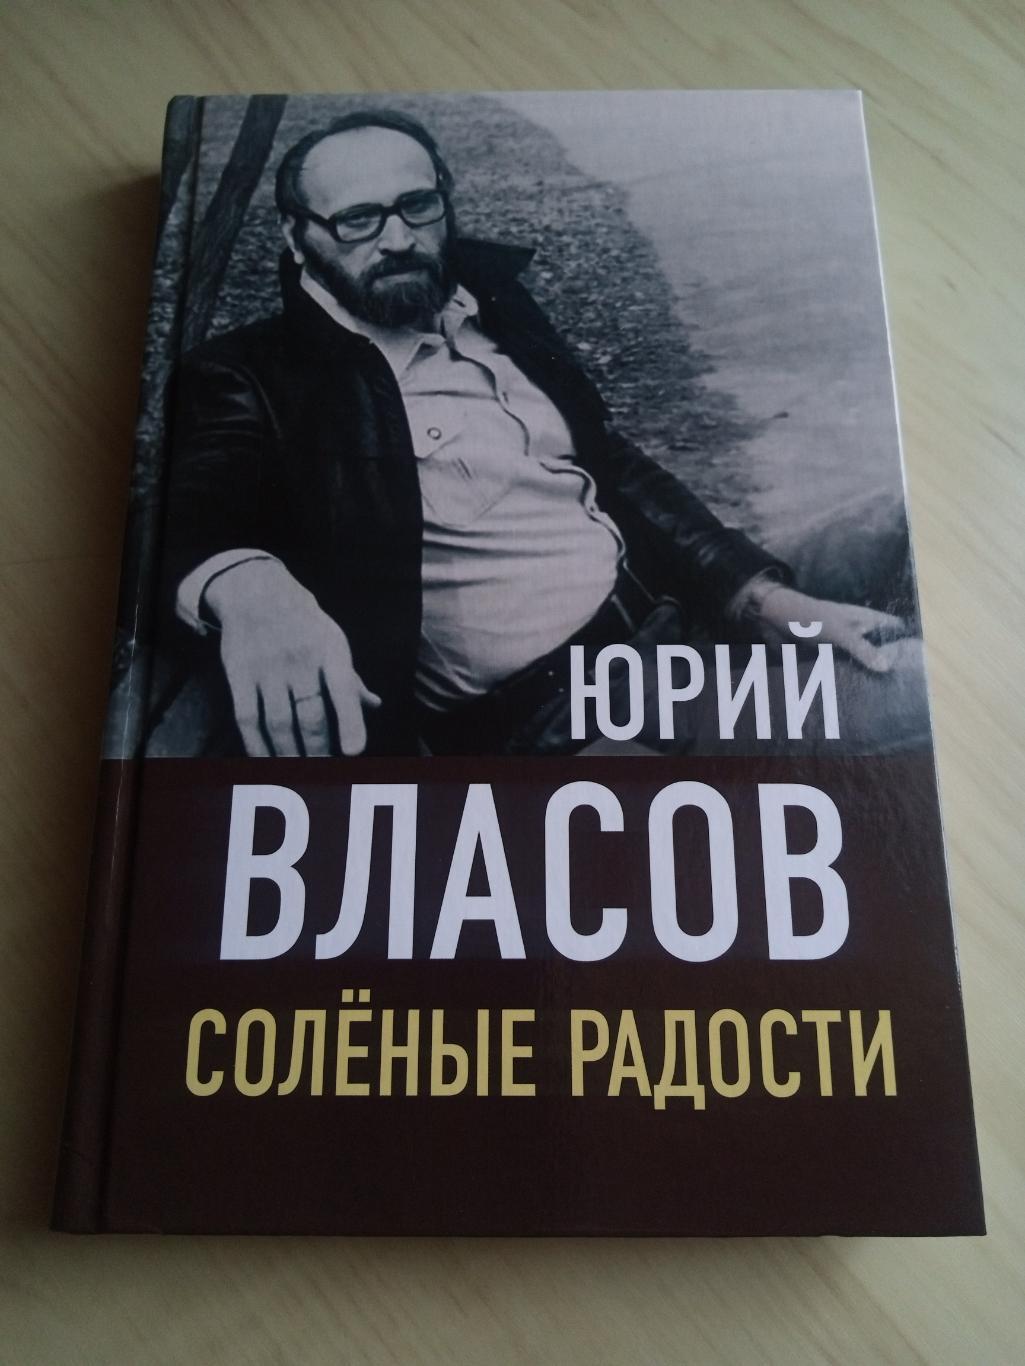 Книга Юрий Власов Соленые радости. 2022 год